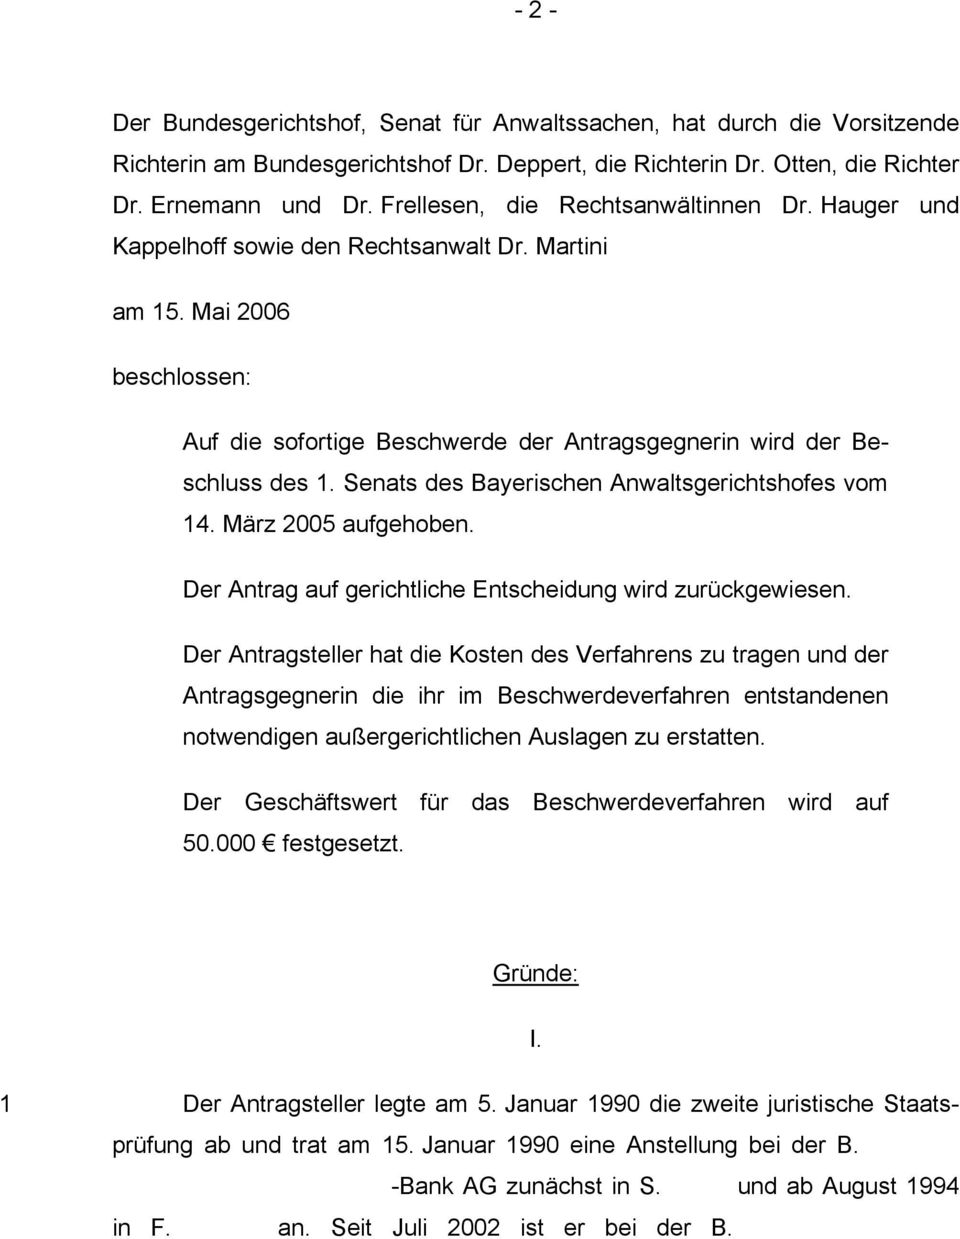 Senats des Bayerischen Anwaltsgerichtshofes vom 14. März 2005 aufgehoben. Der Antrag auf gerichtliche Entscheidung wird zurückgewiesen.